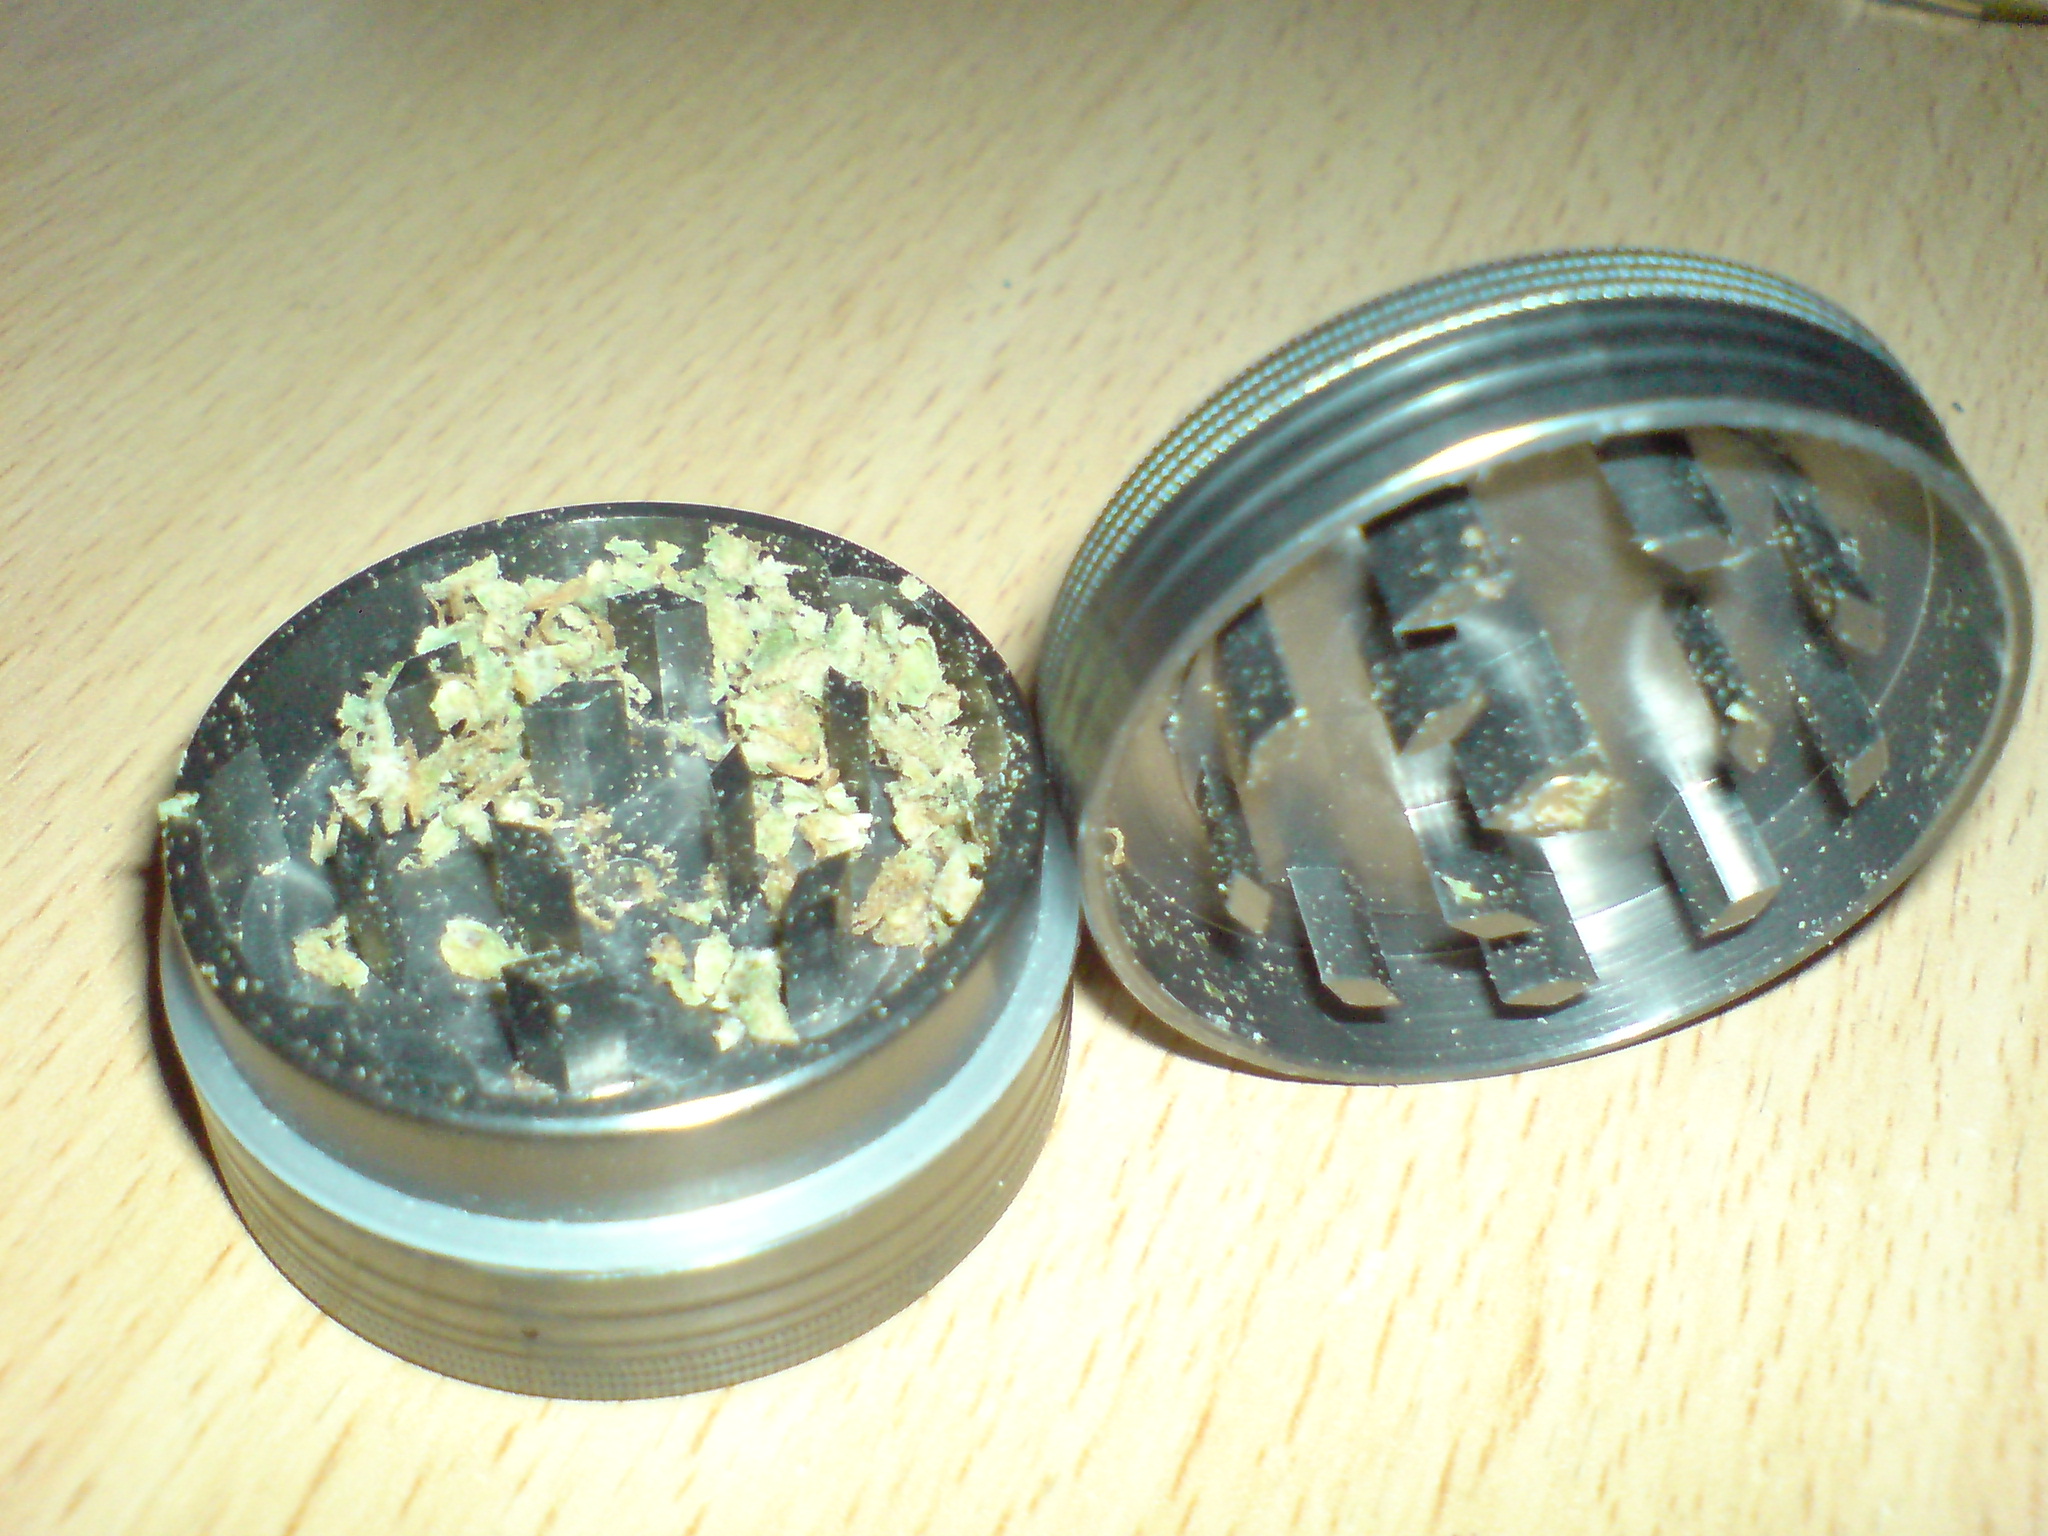 Metal_herb_grinder-cannabis_inside.JPG